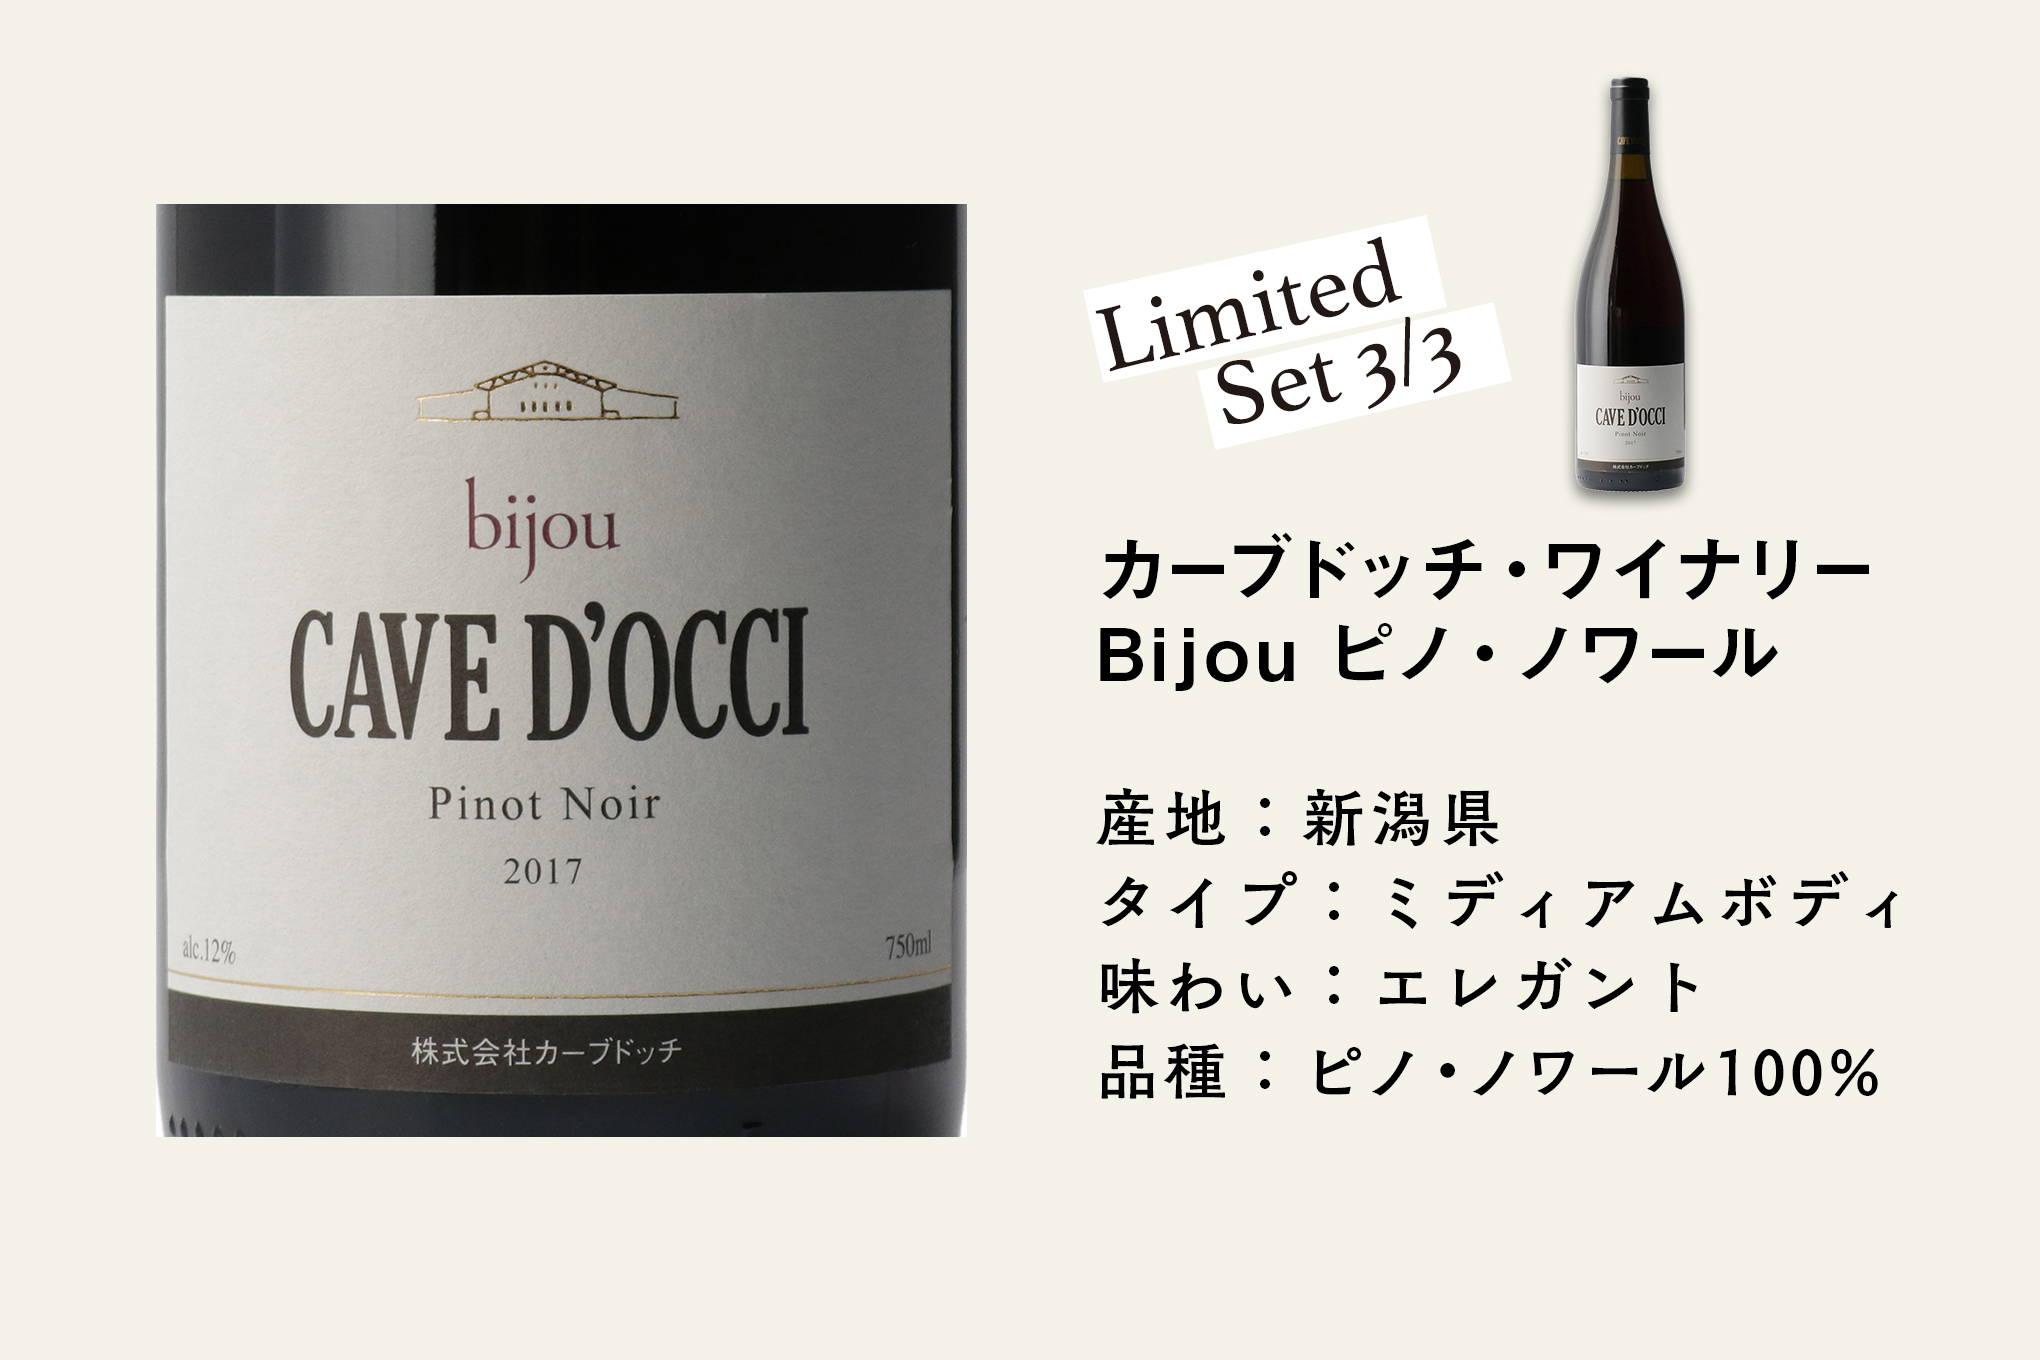 ブドウ品種で最も栽培が難しいといわれている、希少なピノ・ノワールの日本ワイン。この樹齢20年を超すピノ・ノワールのワインは日本最高峰のレベル